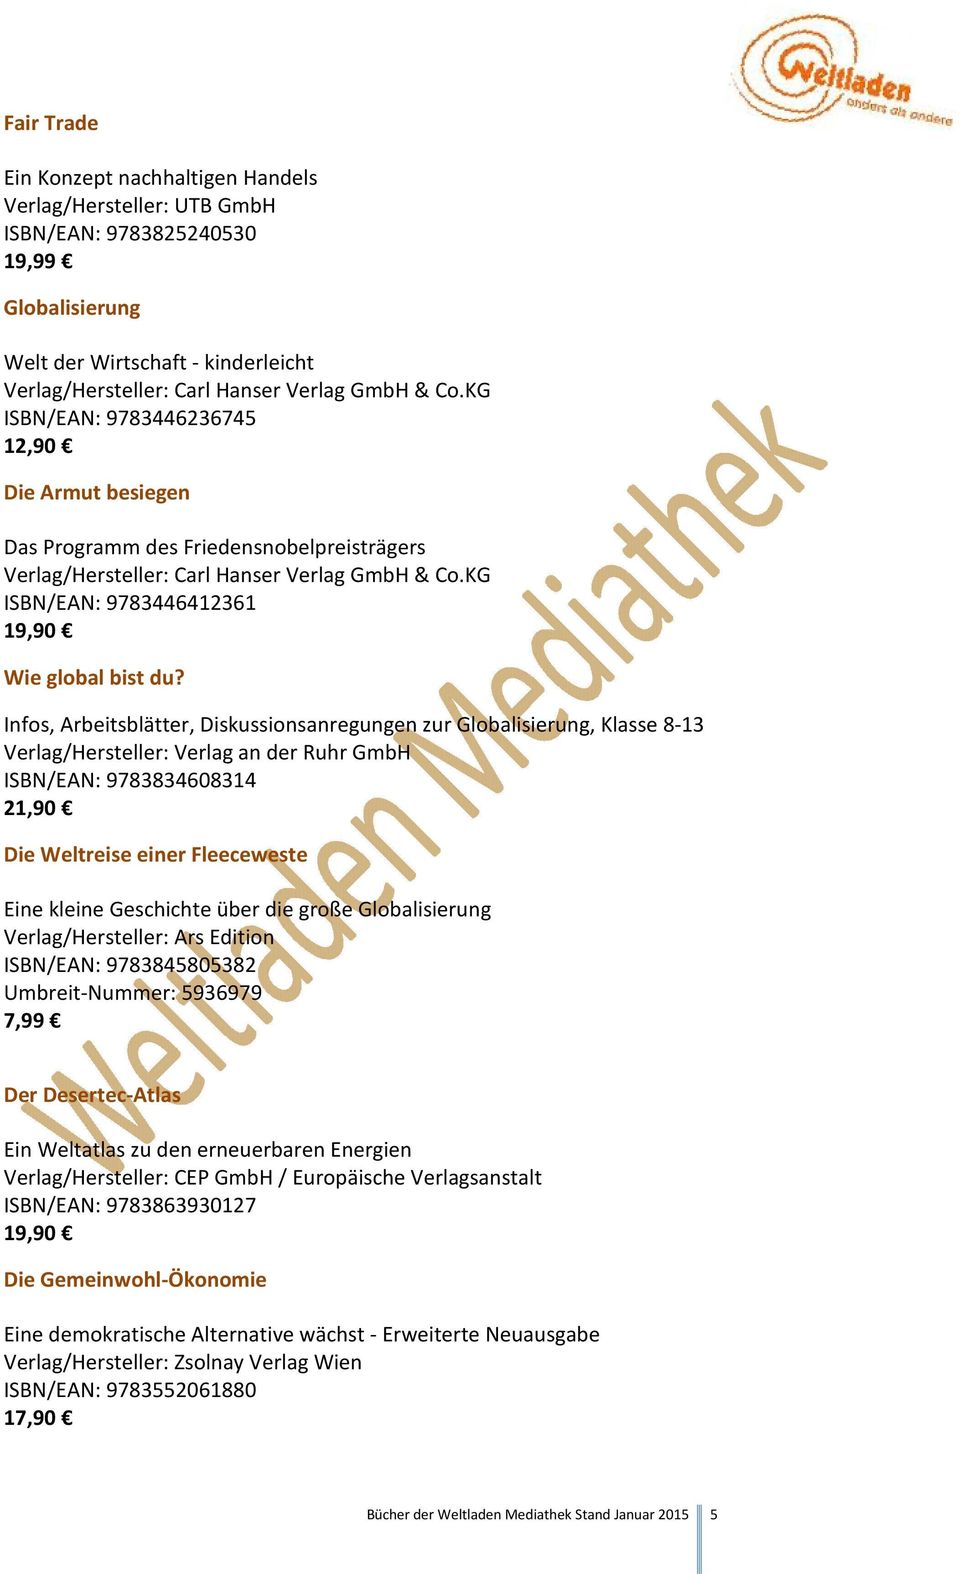 Infos, Arbeitsblätter, Diskussionsanregungen zur Globalisierung, Klasse 8-13 Verlag/Hersteller: Verlag an der Ruhr GmbH ISBN/EAN: 9783834608314 21,90 Die Weltreise einer Fleeceweste Eine kleine